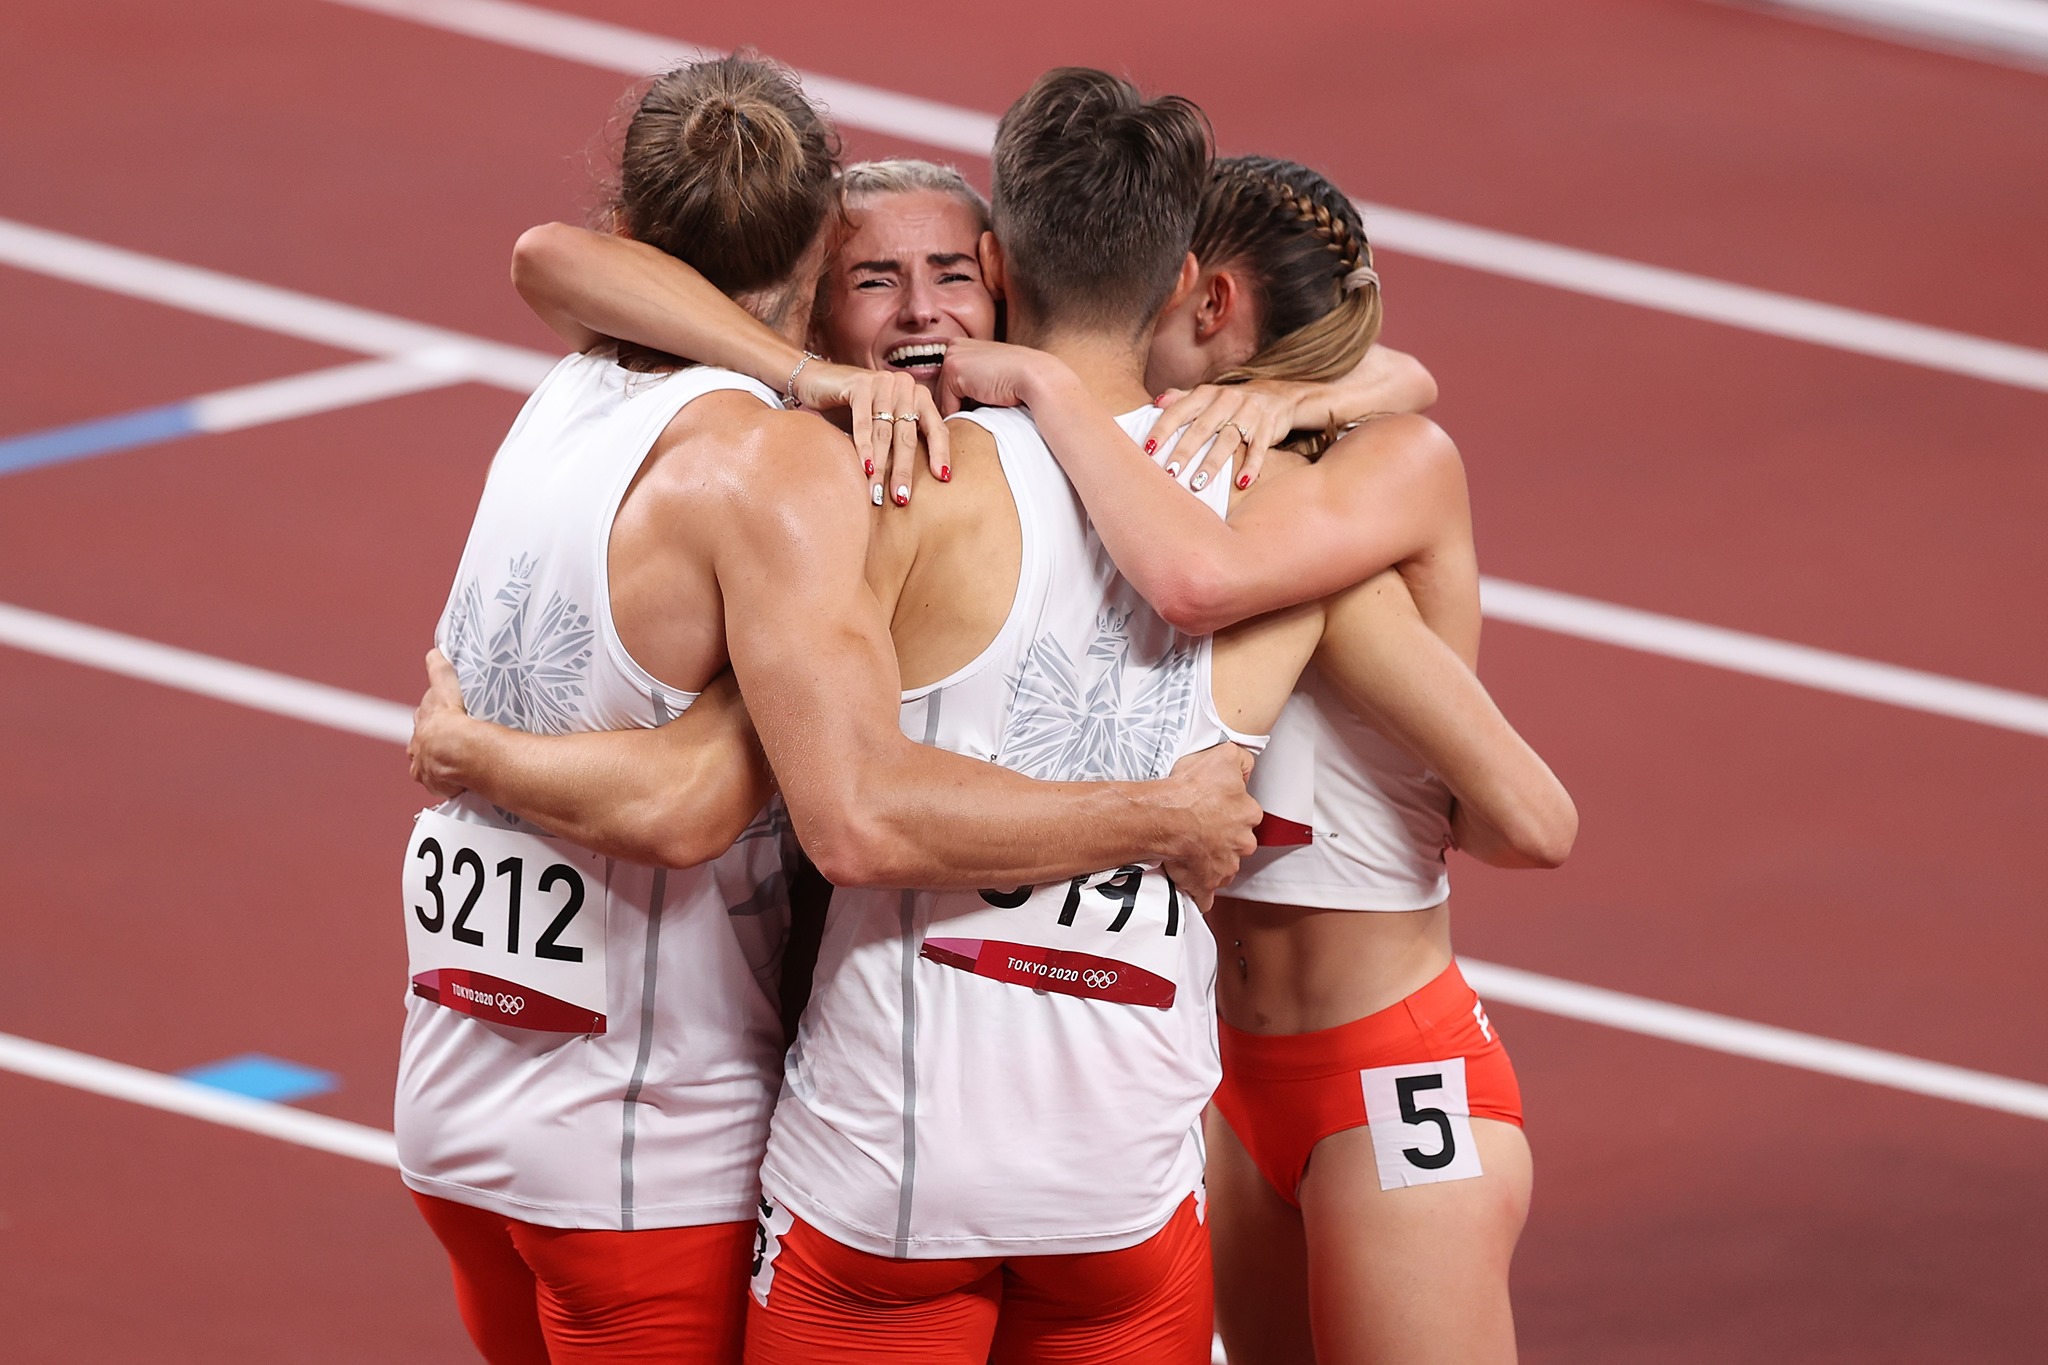 Polônia tornou-se o primeiro país campeão do revezamento 4x400 m misto